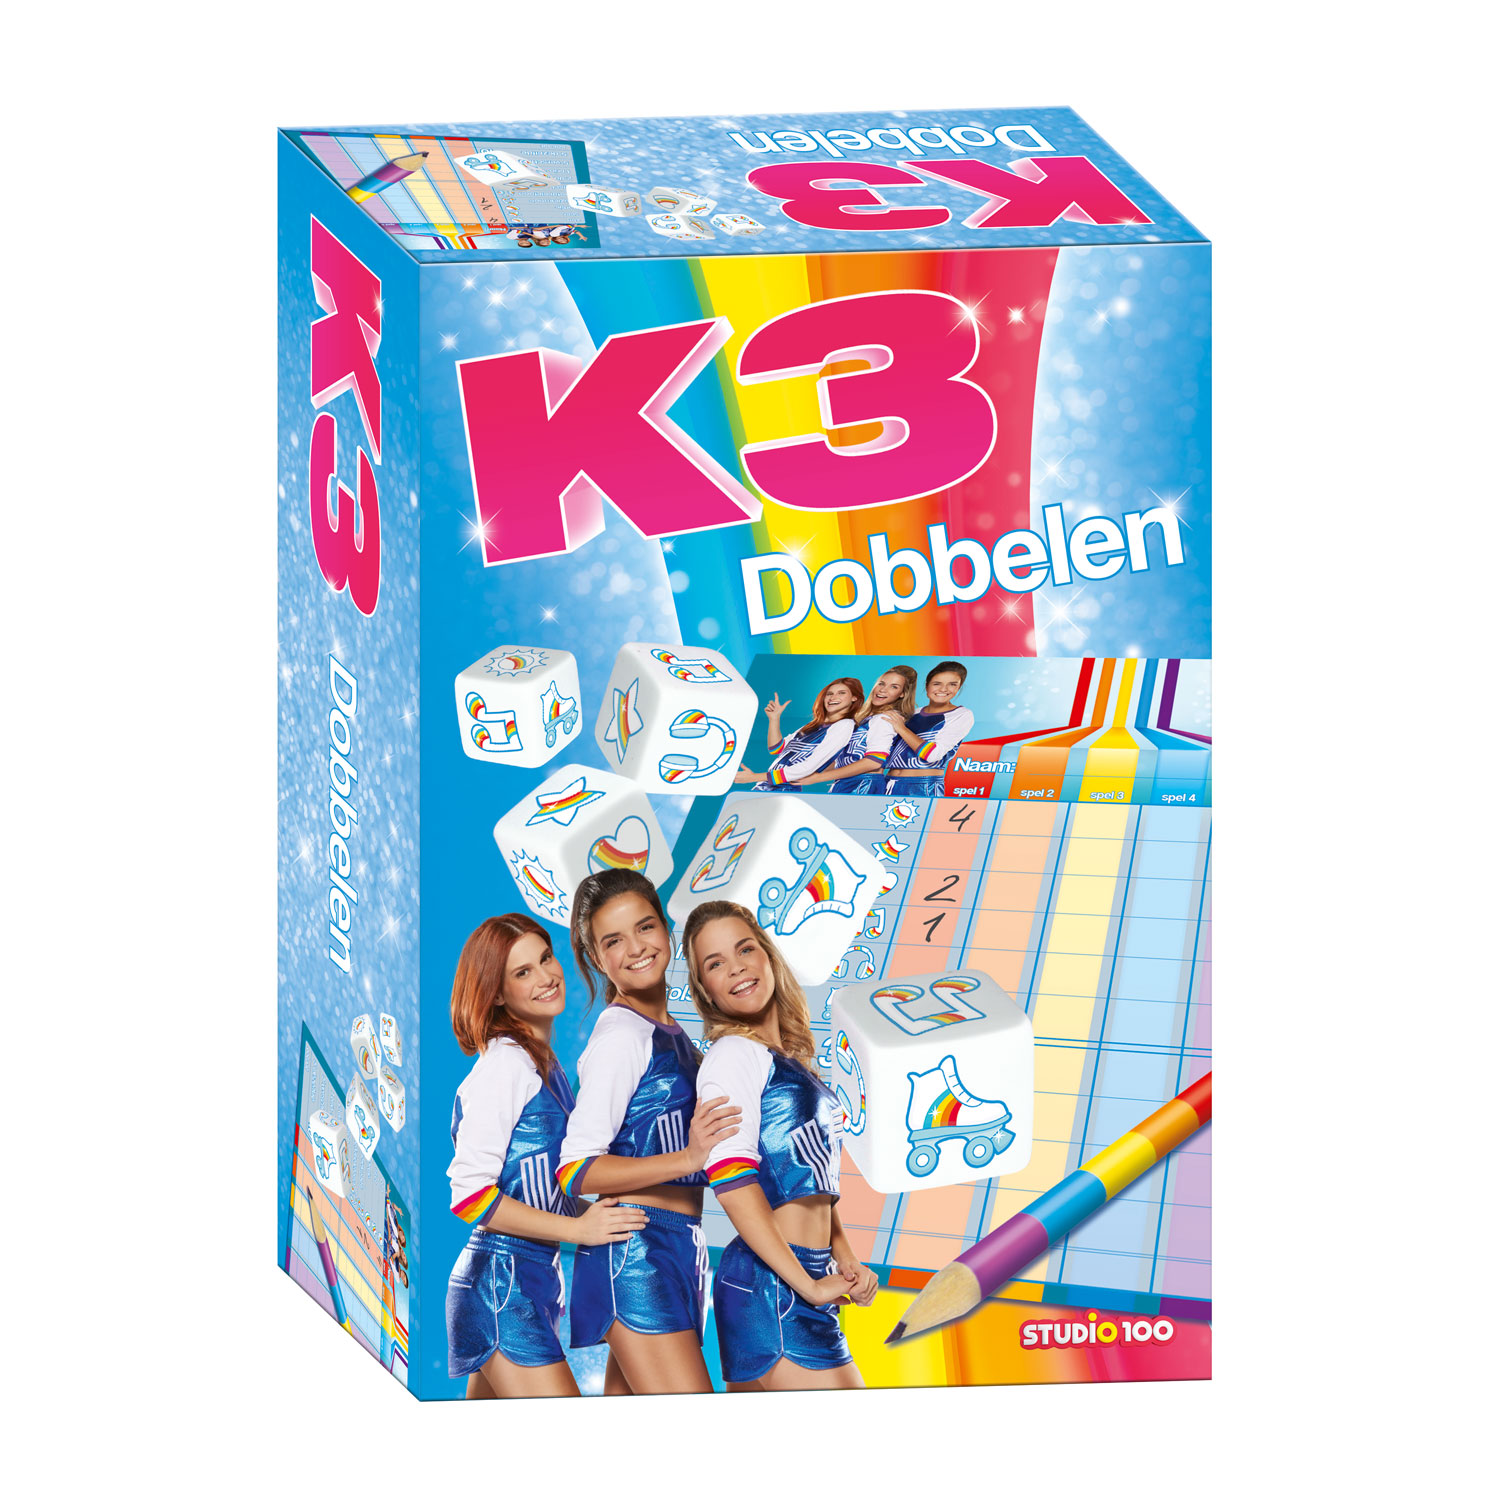 Heel Specimen Verbergen K3 Dobbelspel Roller Disco online kopen | Lobbes Speelgoed